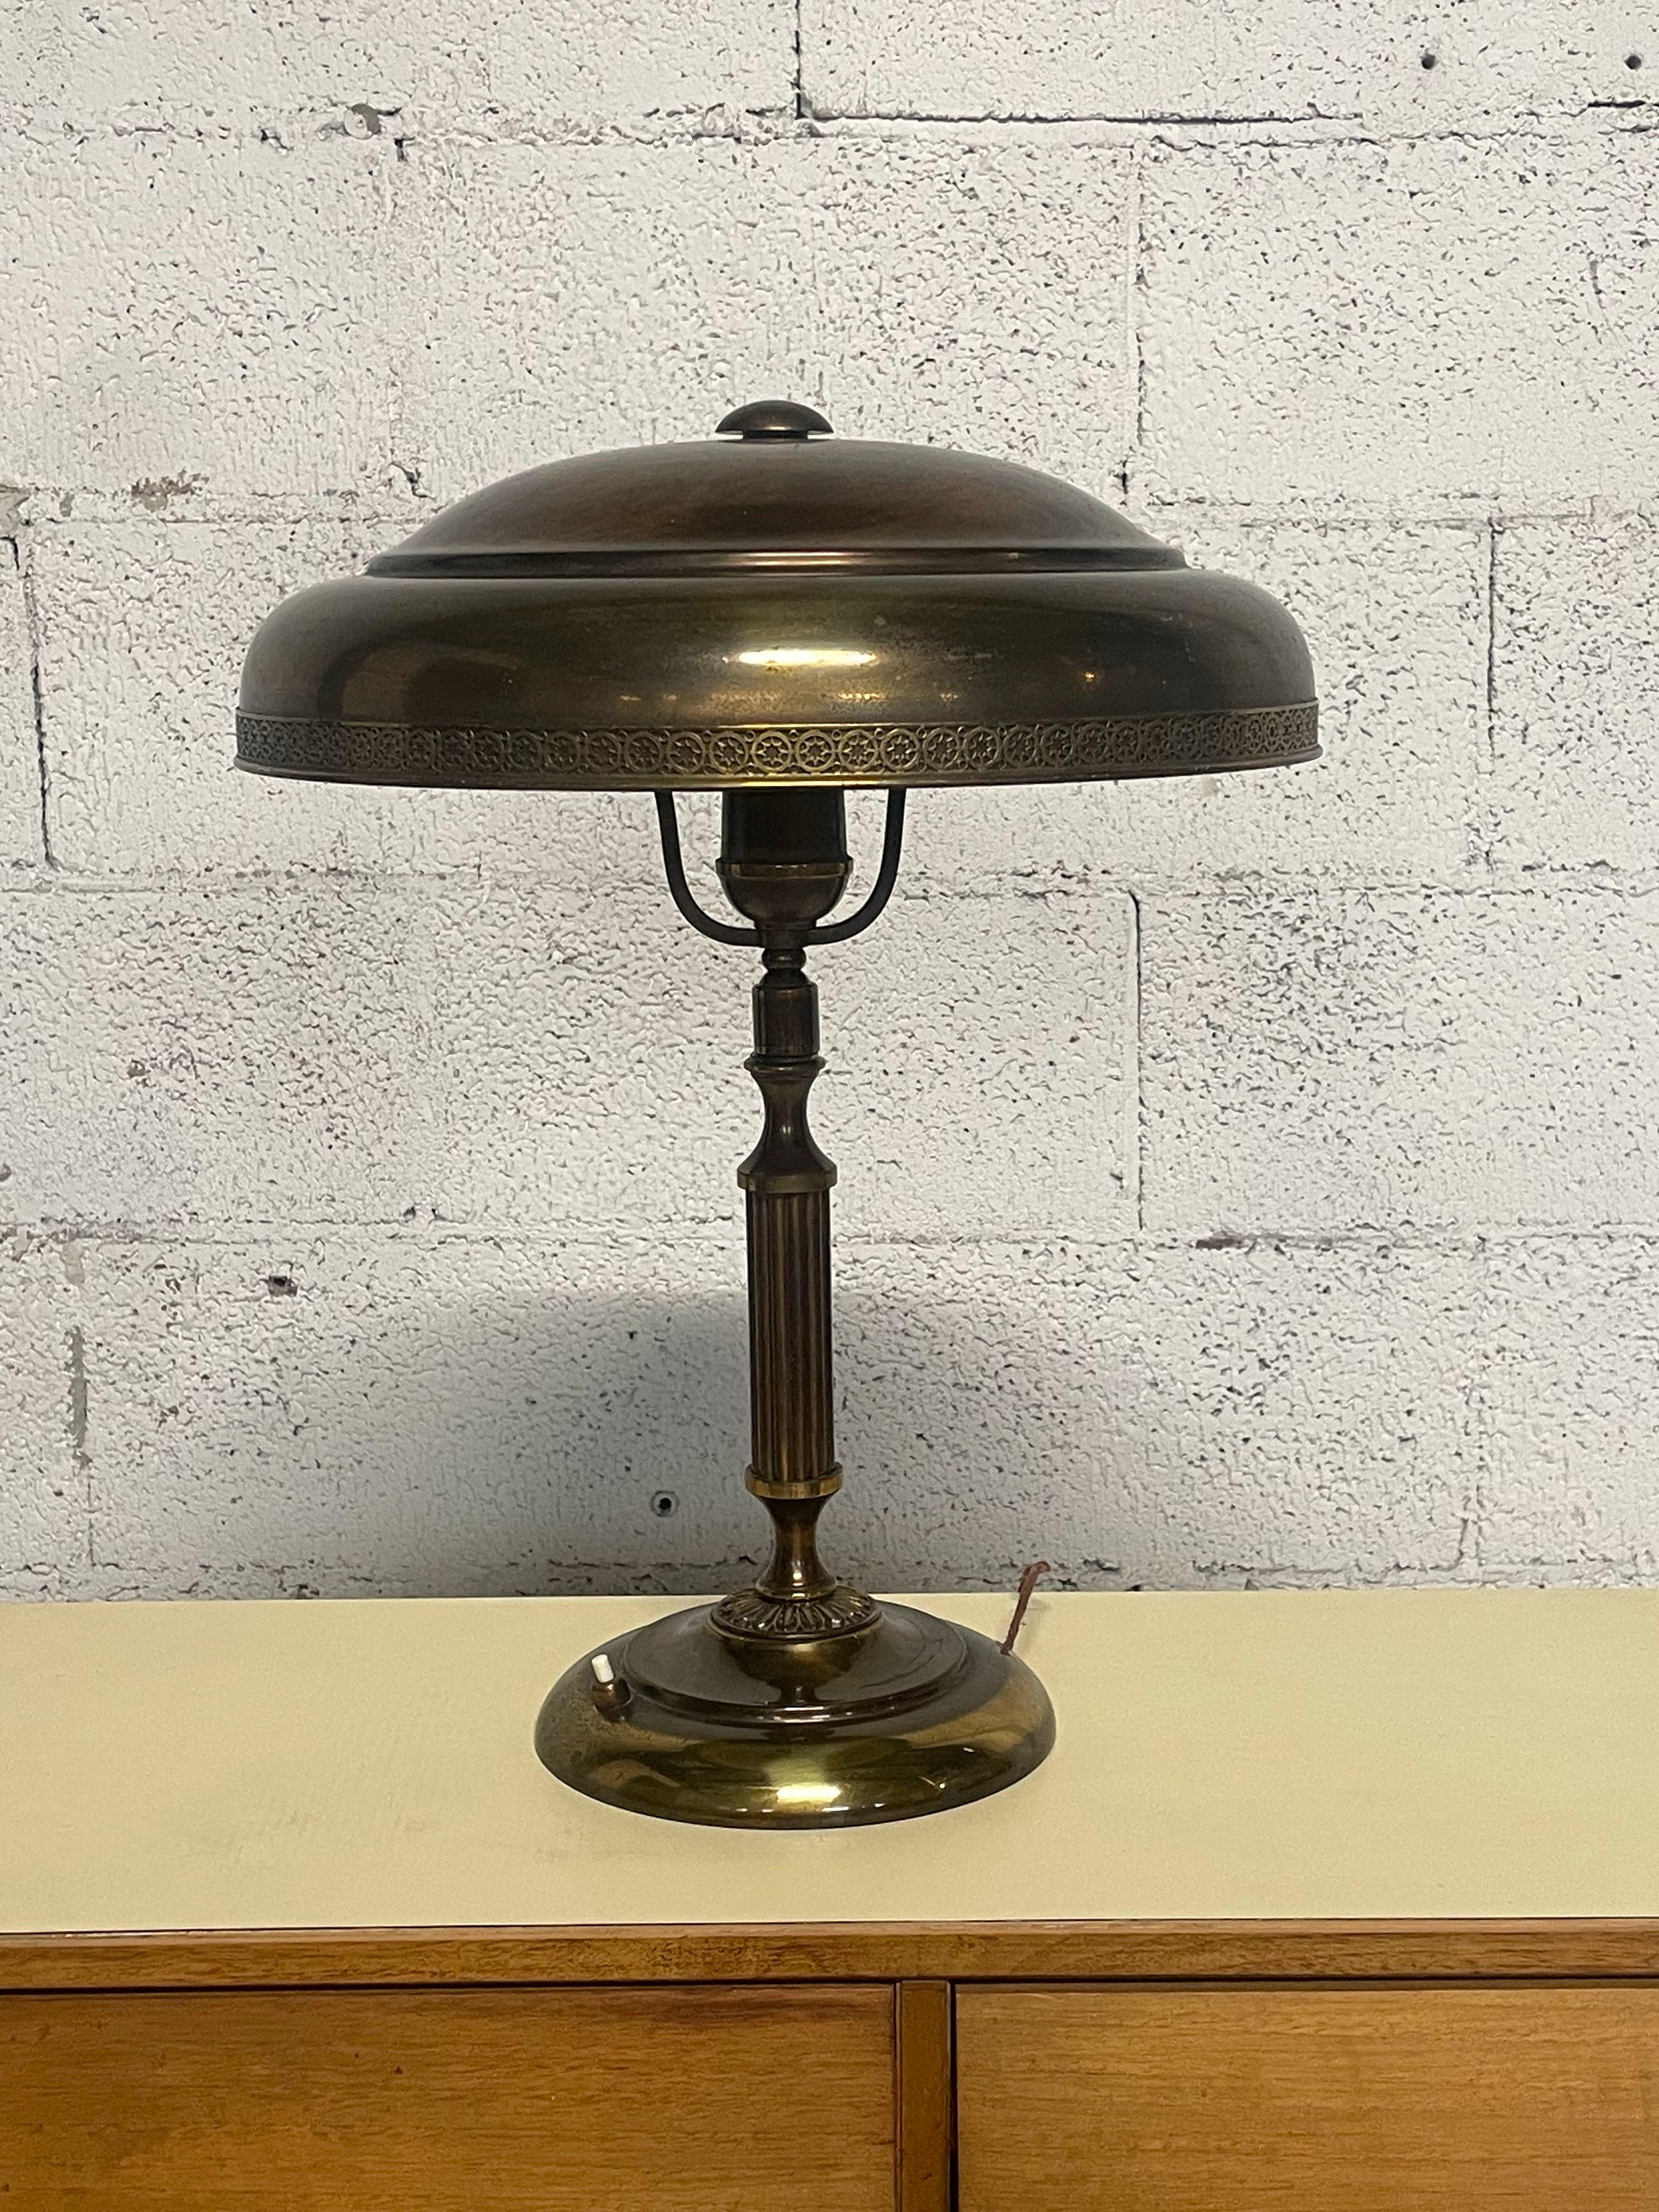 Grande lampada da tavolo anni '40 interamente in ottone.
Il cappello è orientabile.
Filo e accensione ancora originali.